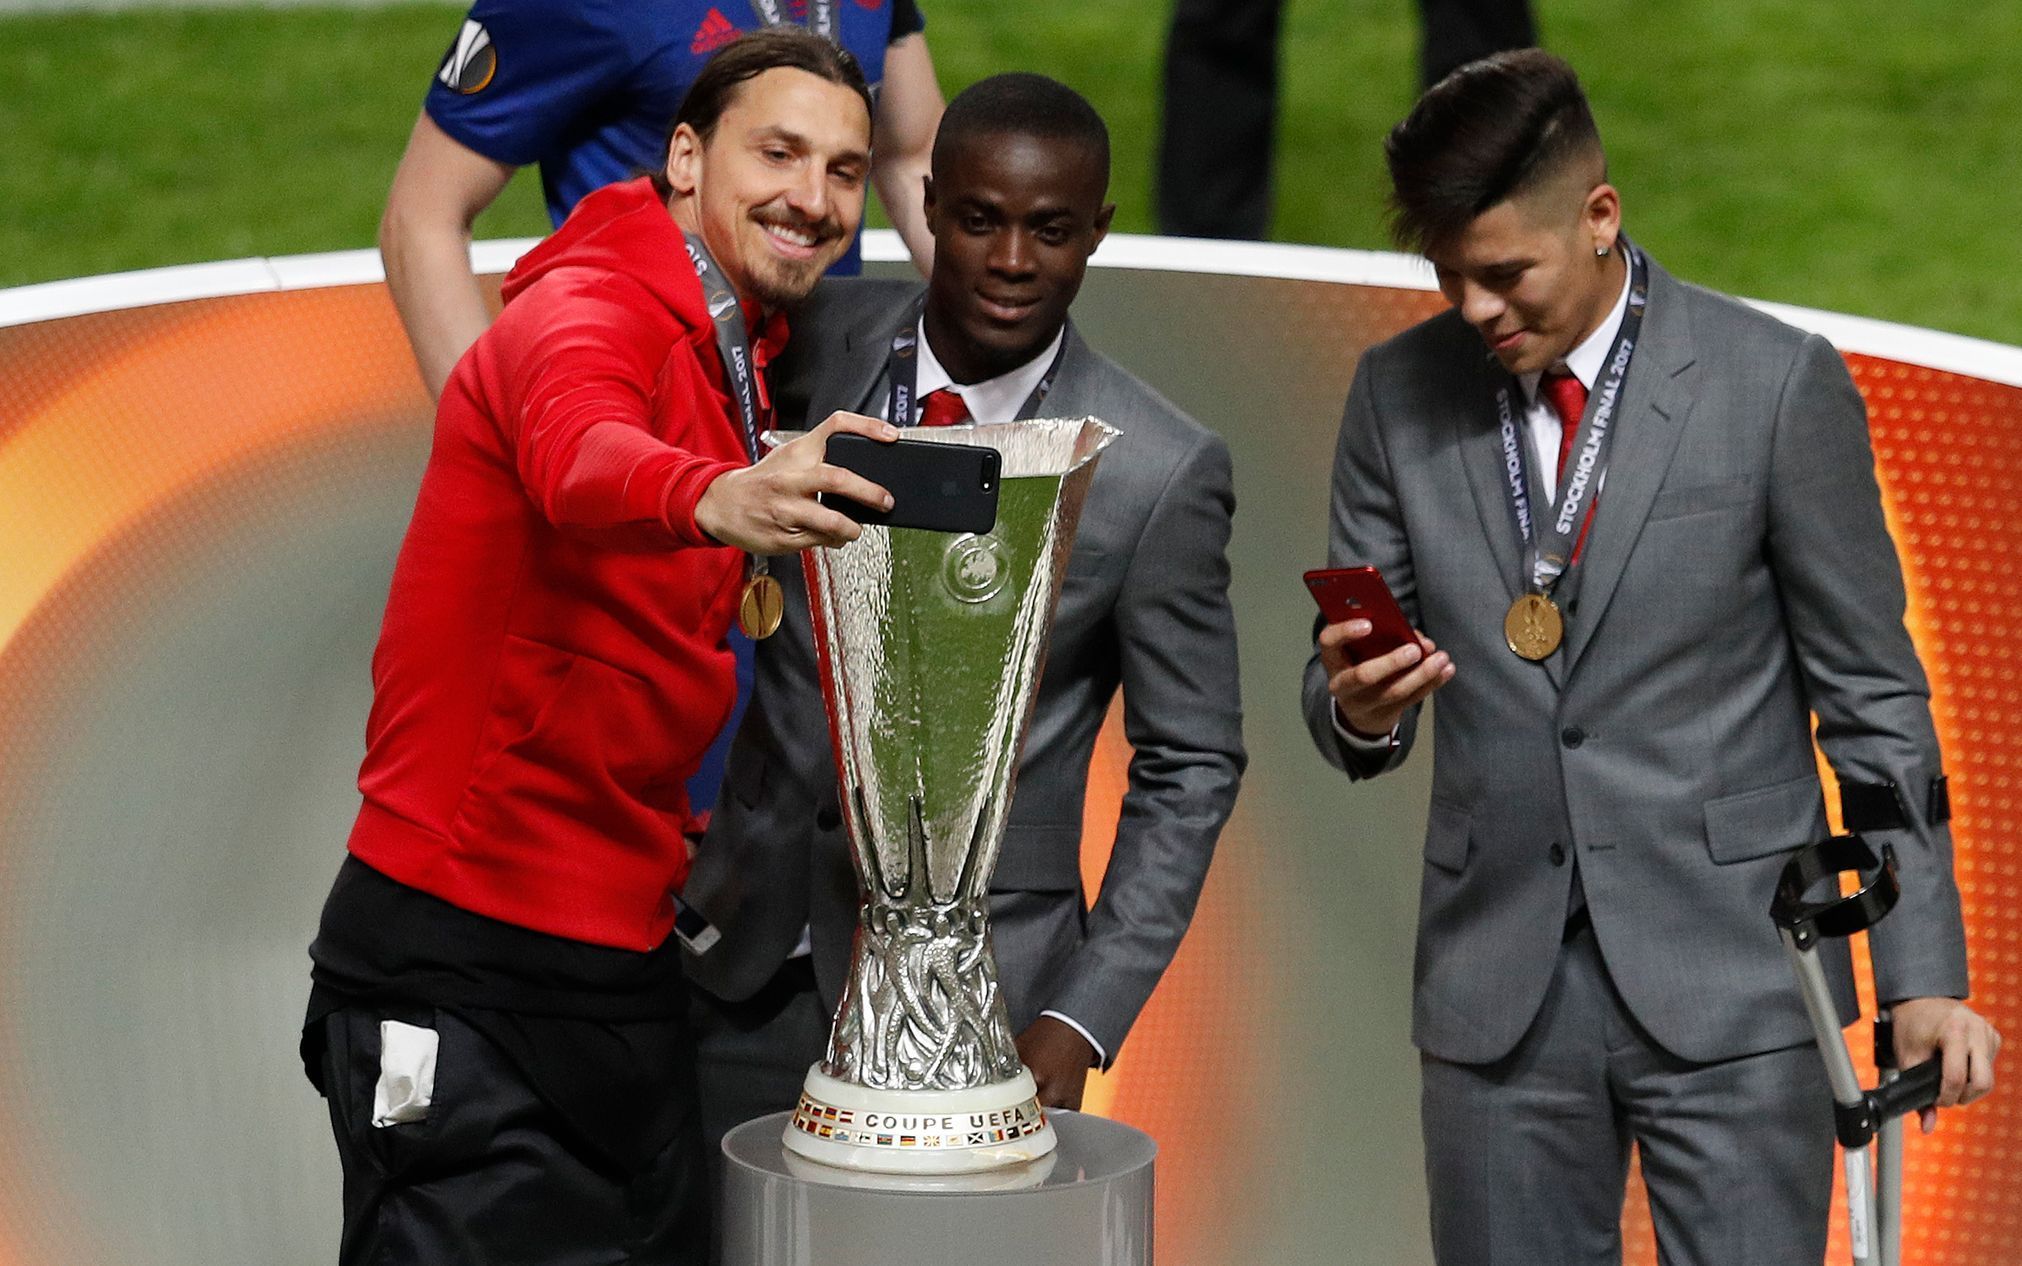 Fotbalisté Manchesteru United slaví titul v Evropské lize